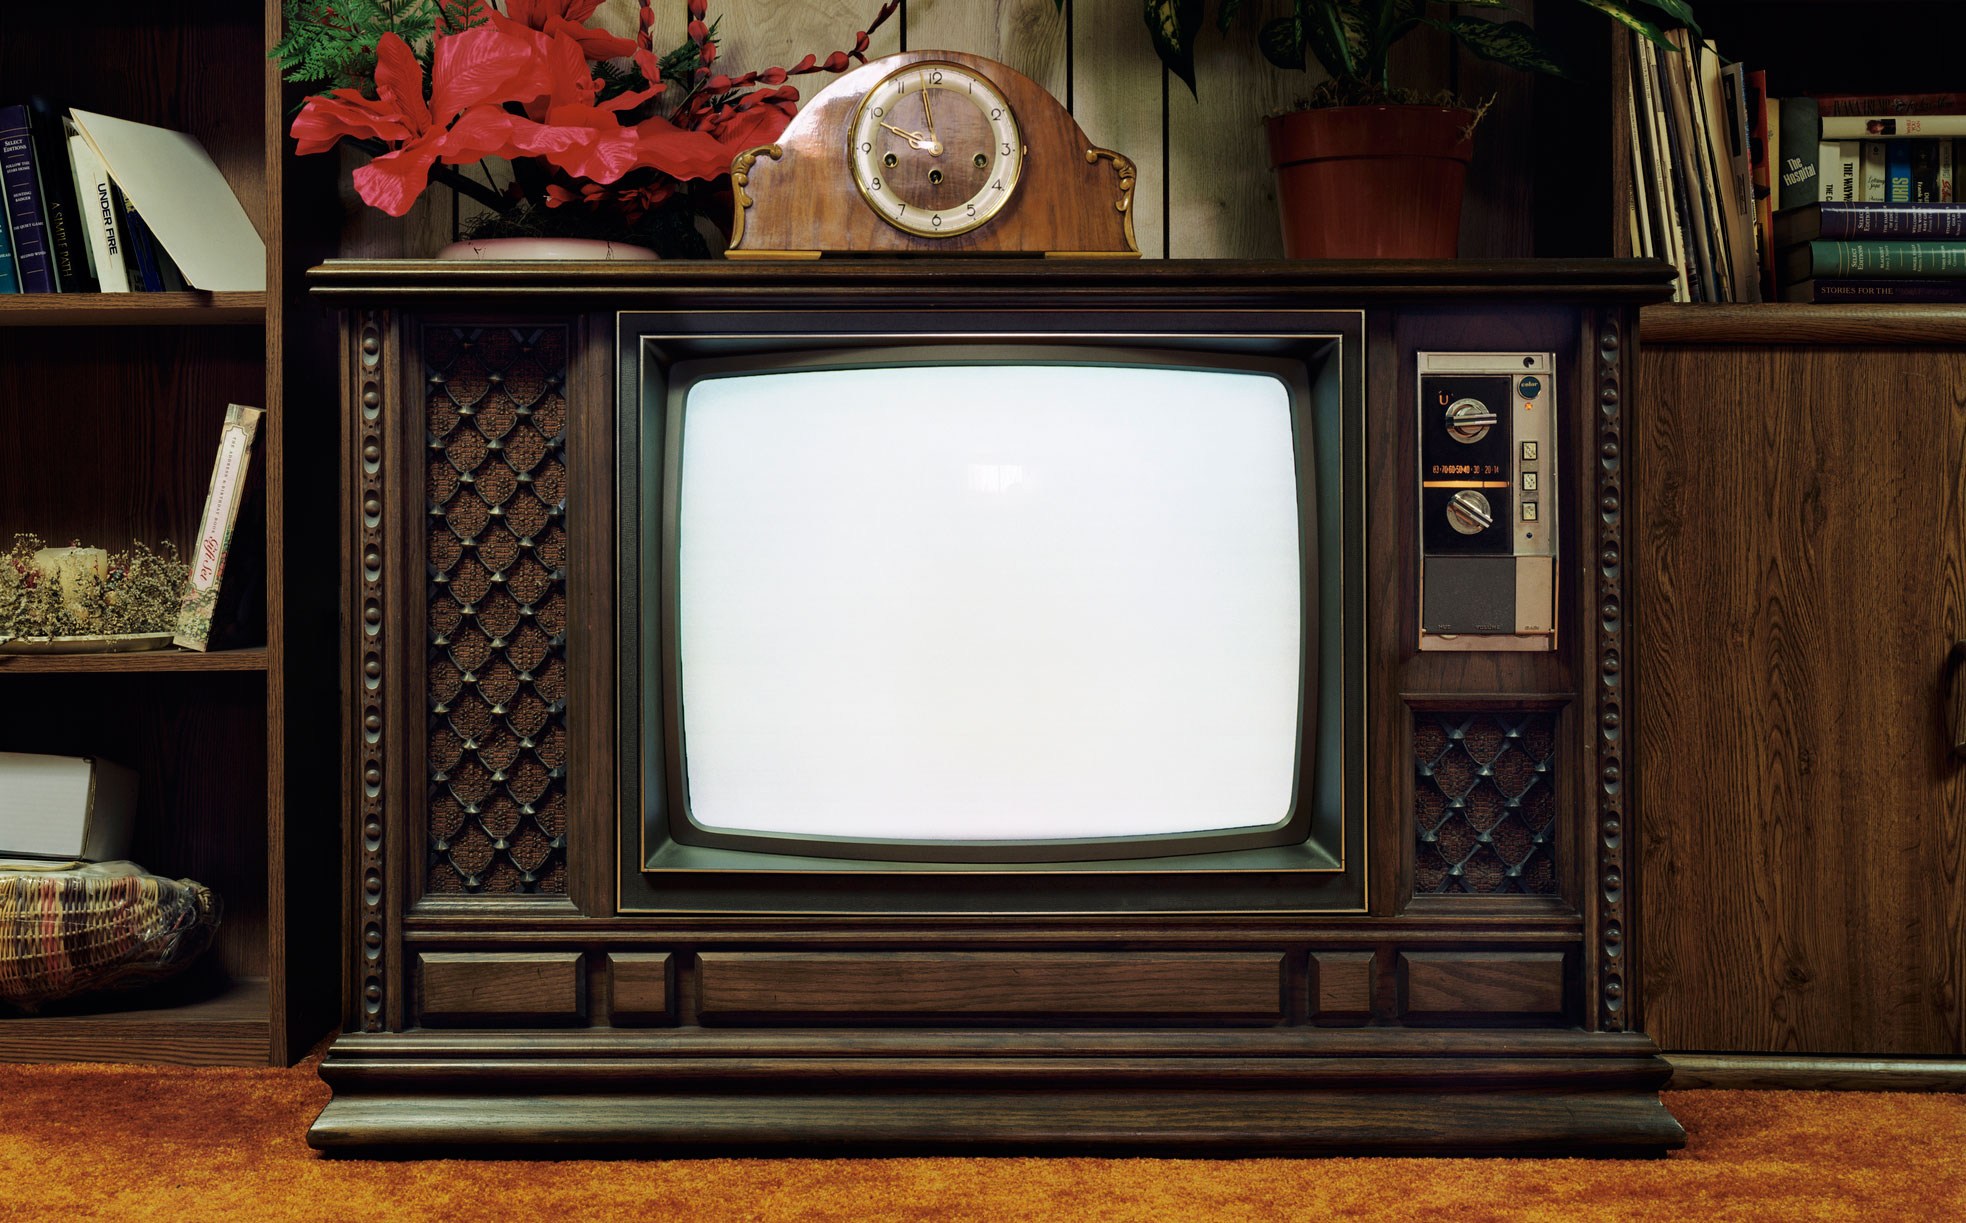 Old Tv Set In Living Room